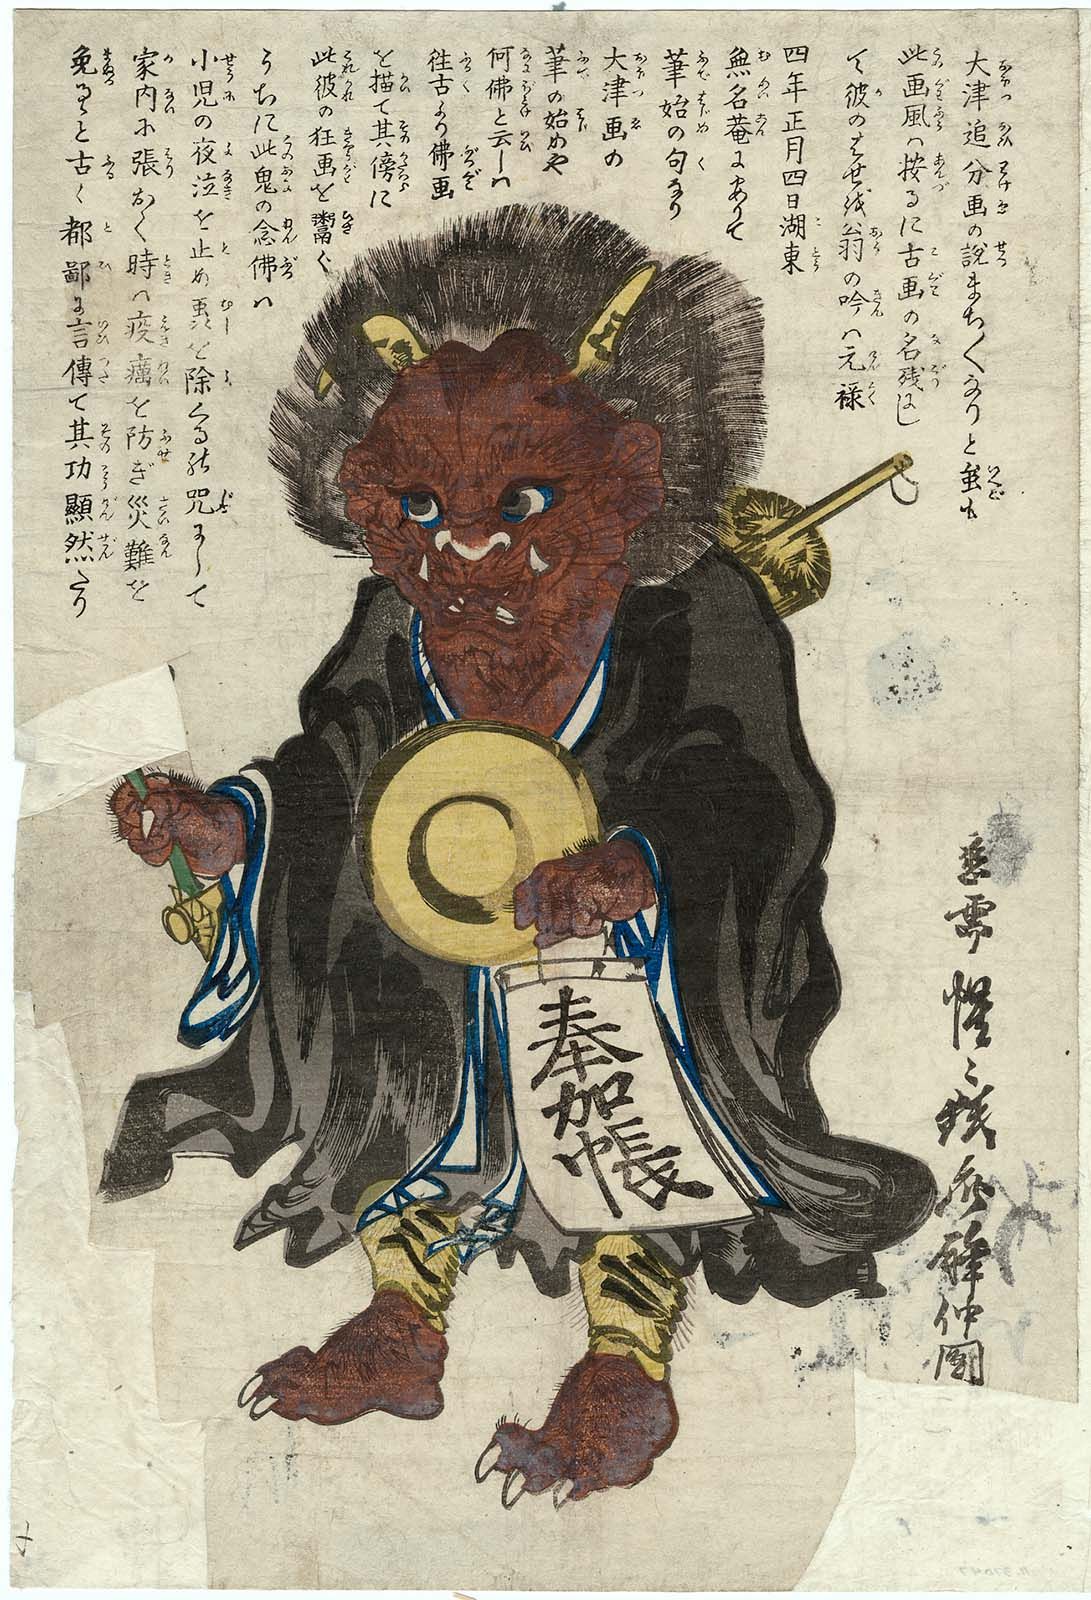 大津絵：鬼の念仏 by Kawanabe Kyōsai - 1860年代 - 35.8 x 24.3 cm 